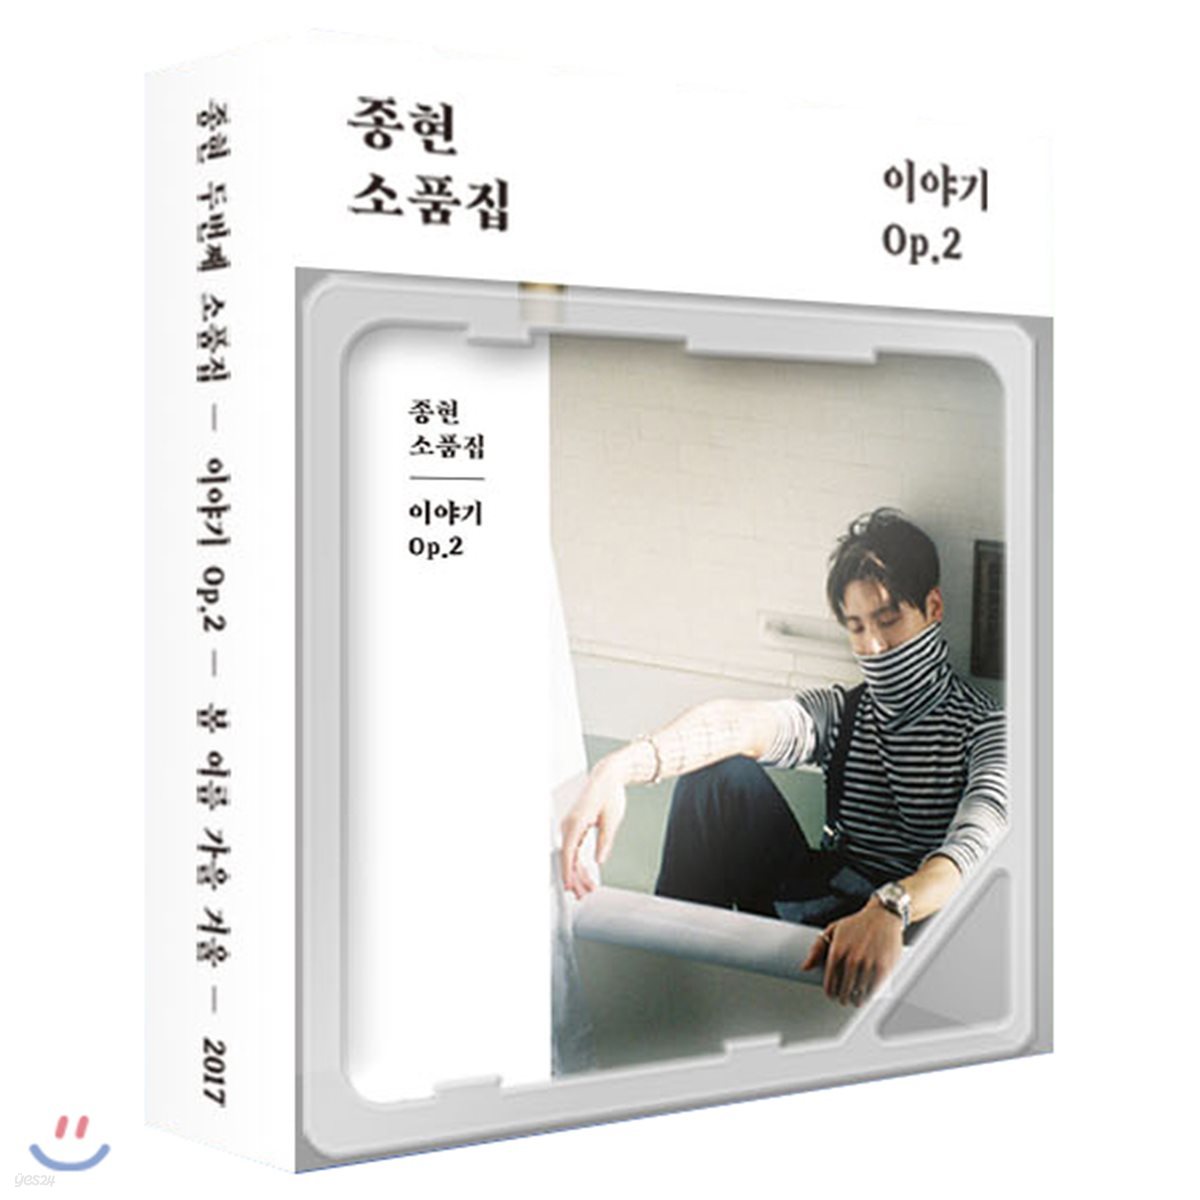 종현 (Jonghyun) - 소품집 : 이야기 Op.2 [스마트뮤직앨범(키노 앨범)]